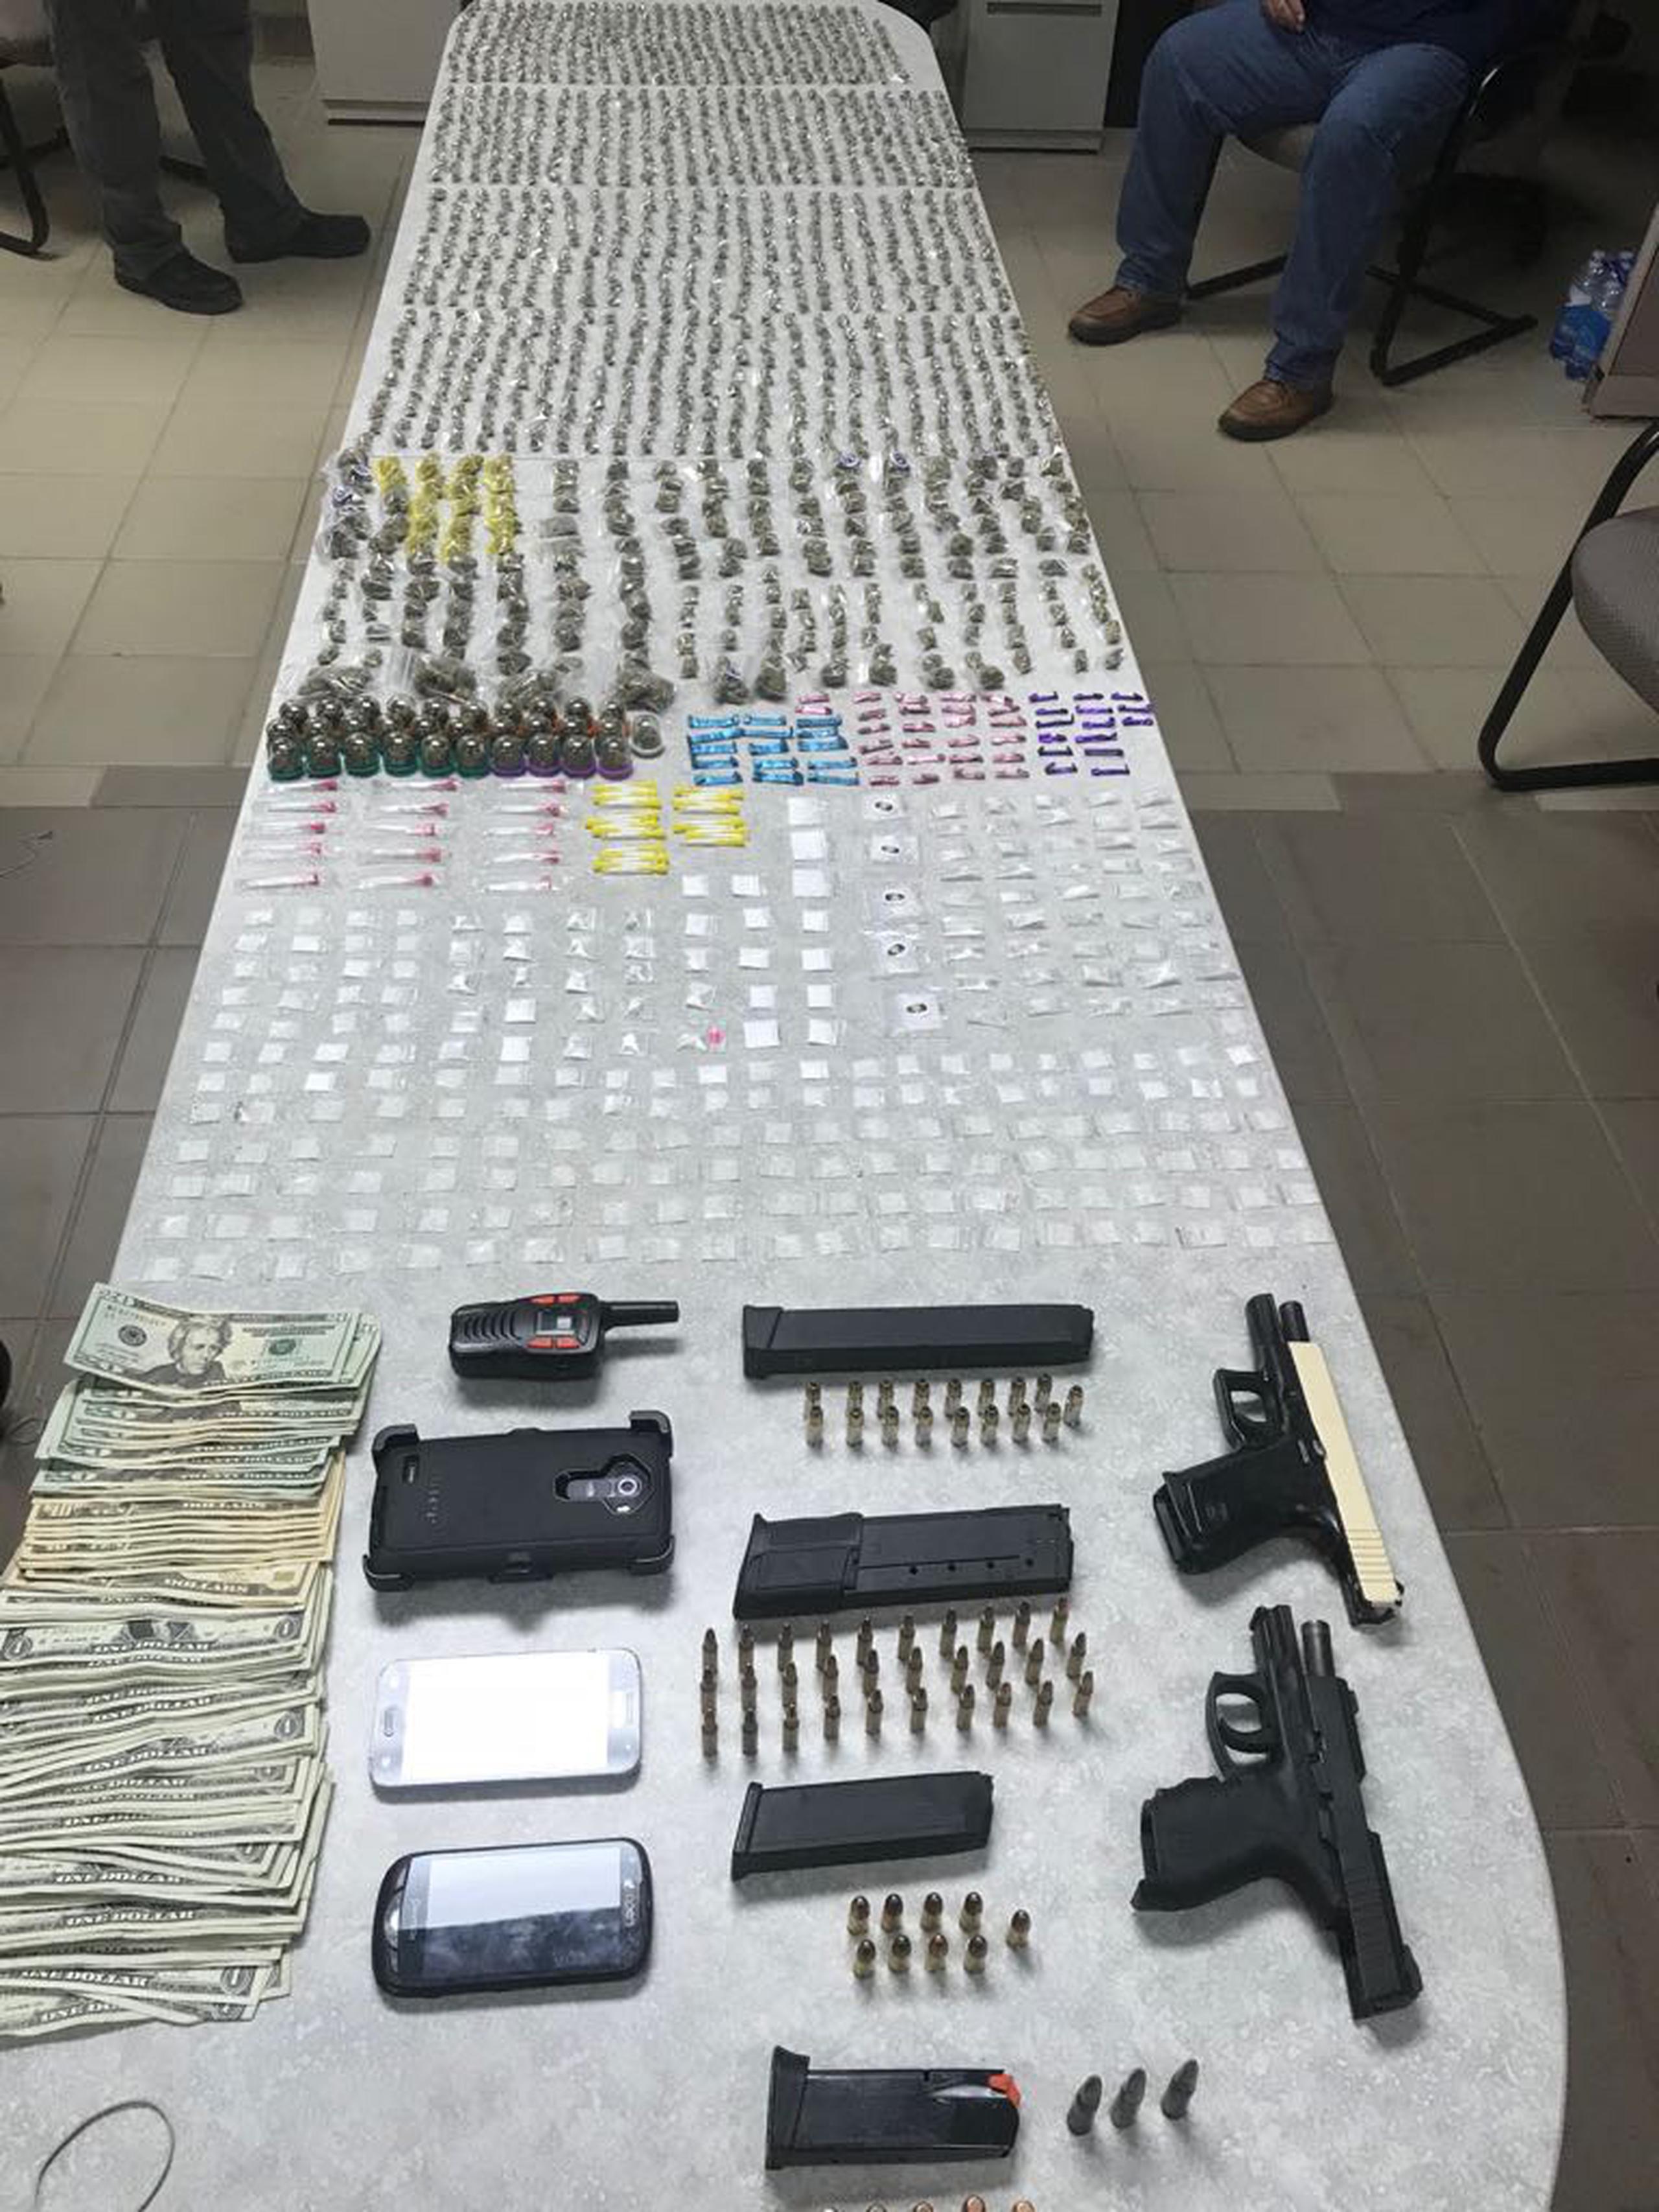 Parte de la evidencia ocupada fue una pistola glock, una pistola Taurus, cuatro cargadores, 70 balas de diferentes calibres, 238 bolsas de cocaína y 40 bolsas de crack.(Suministrada)